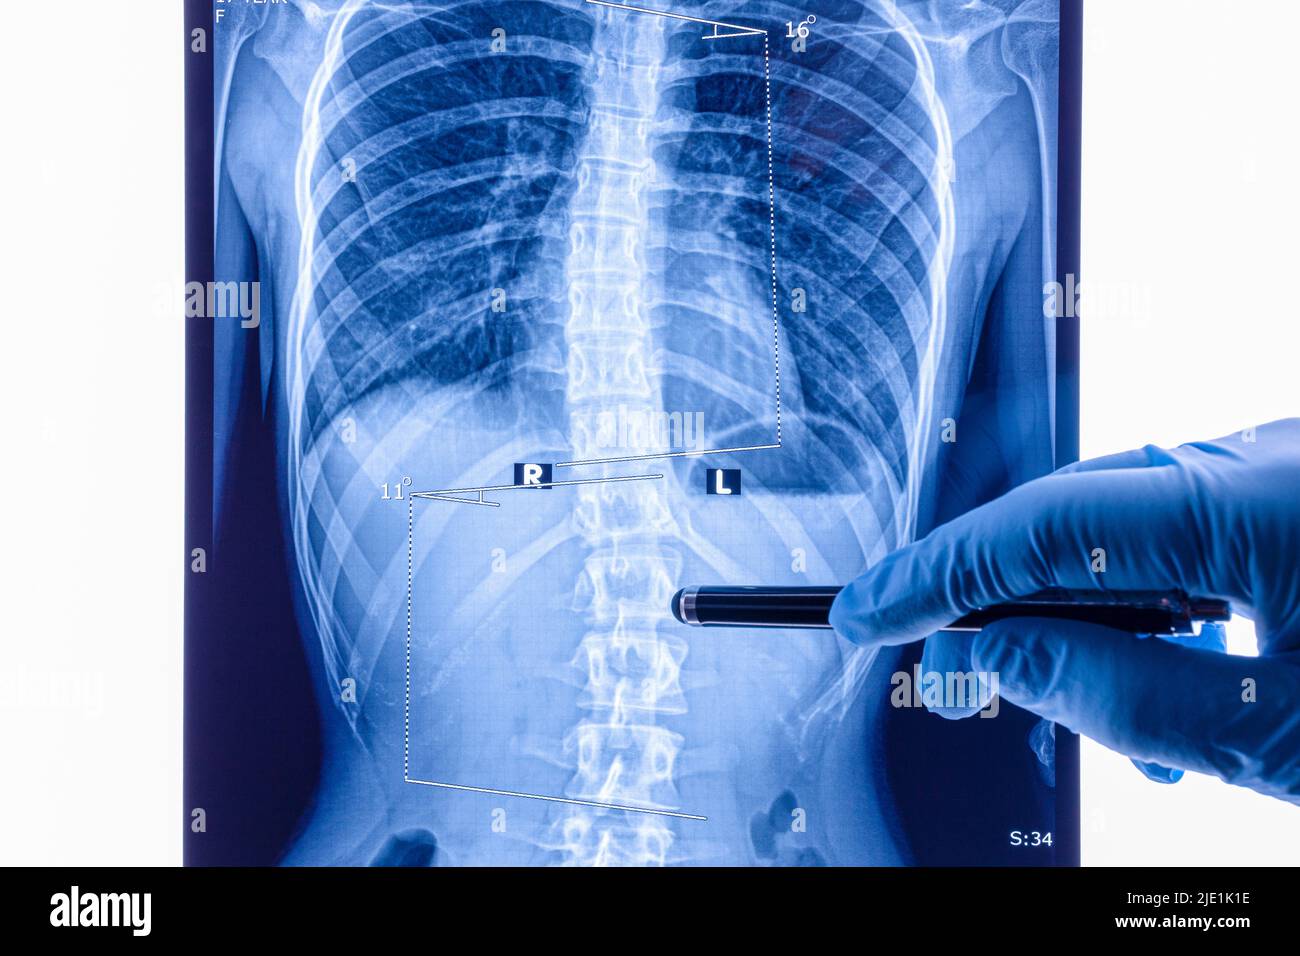 Médico que analiza la radiografía de la columna que muestra escoliosis en el área lumbar. La escoliosis es una curvatura lateral anormal de la columna. Foto de stock